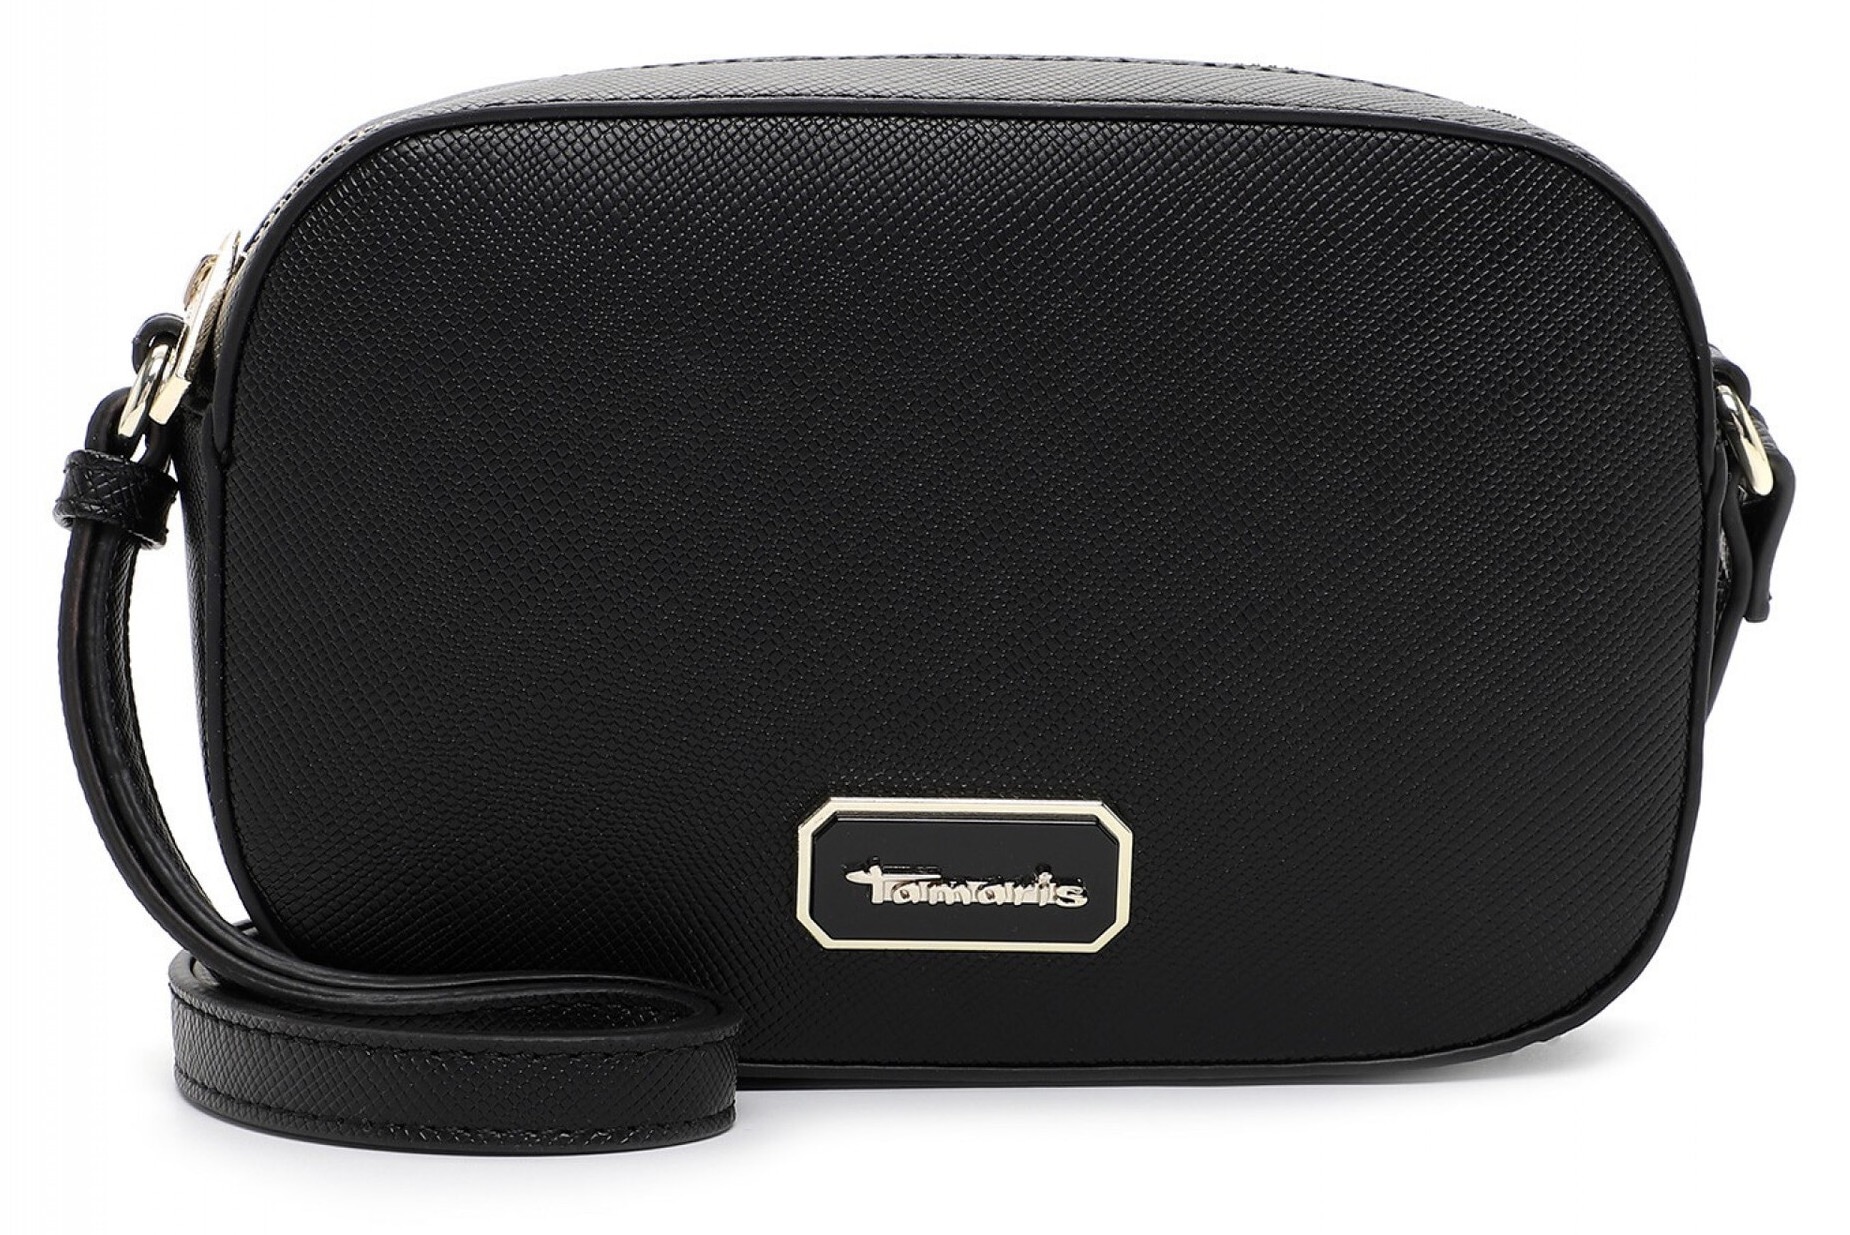 Tamaris Handtasche »TAS Crossbody«, mit Logoemblem und goldfarbenenen Details